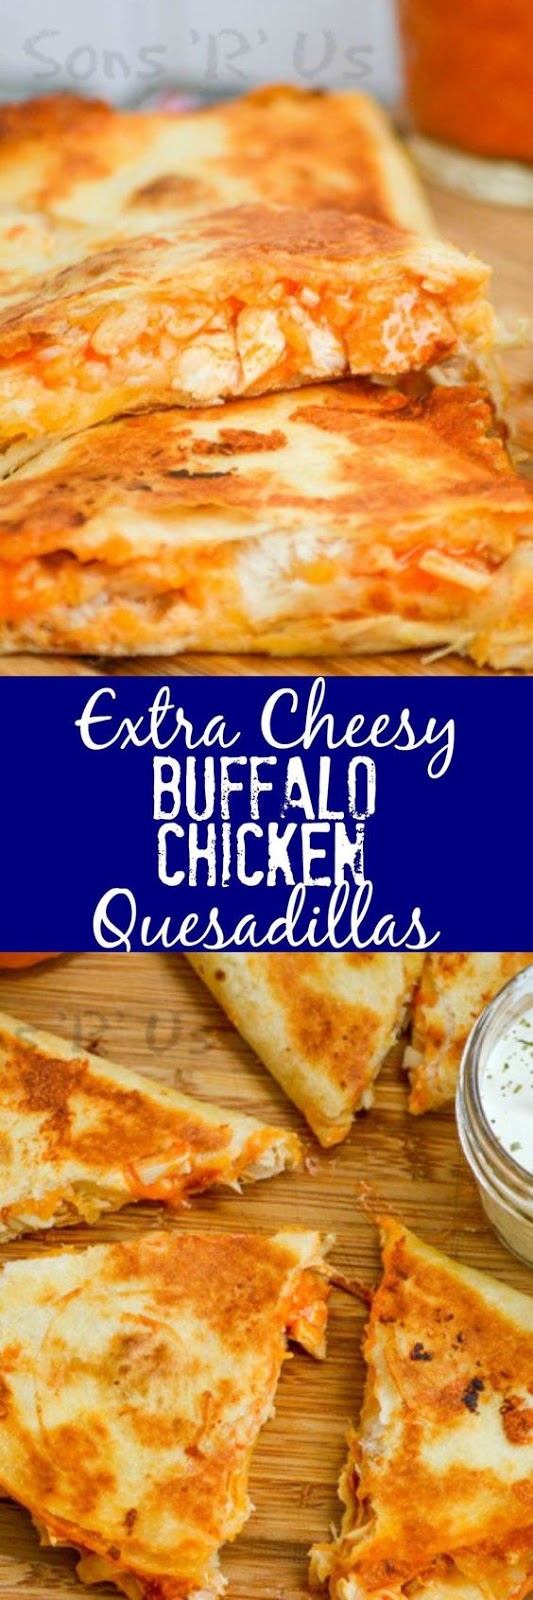 Extra Cheesy Buffalo Chicken Quesadillas